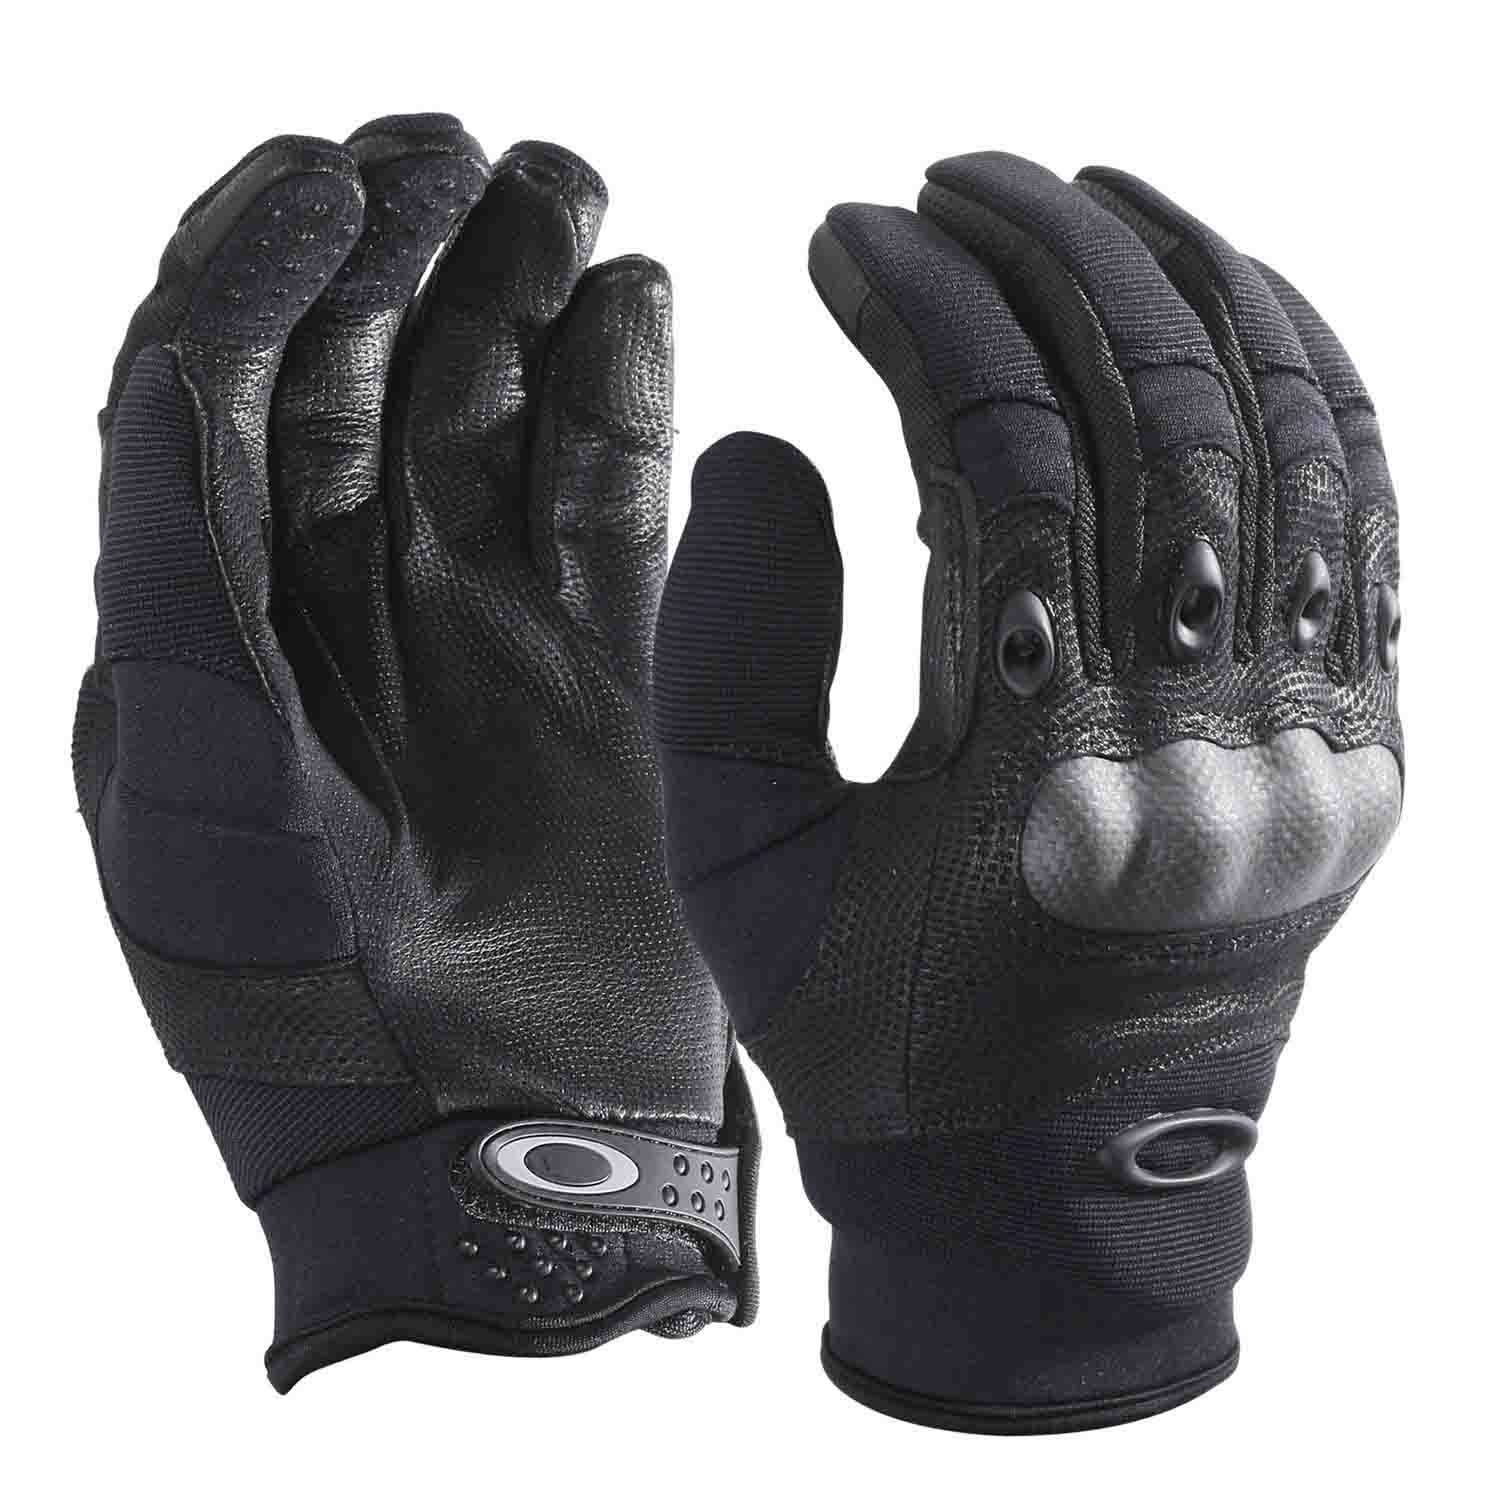 Oakley Factory Pilot 2.0 Glove.